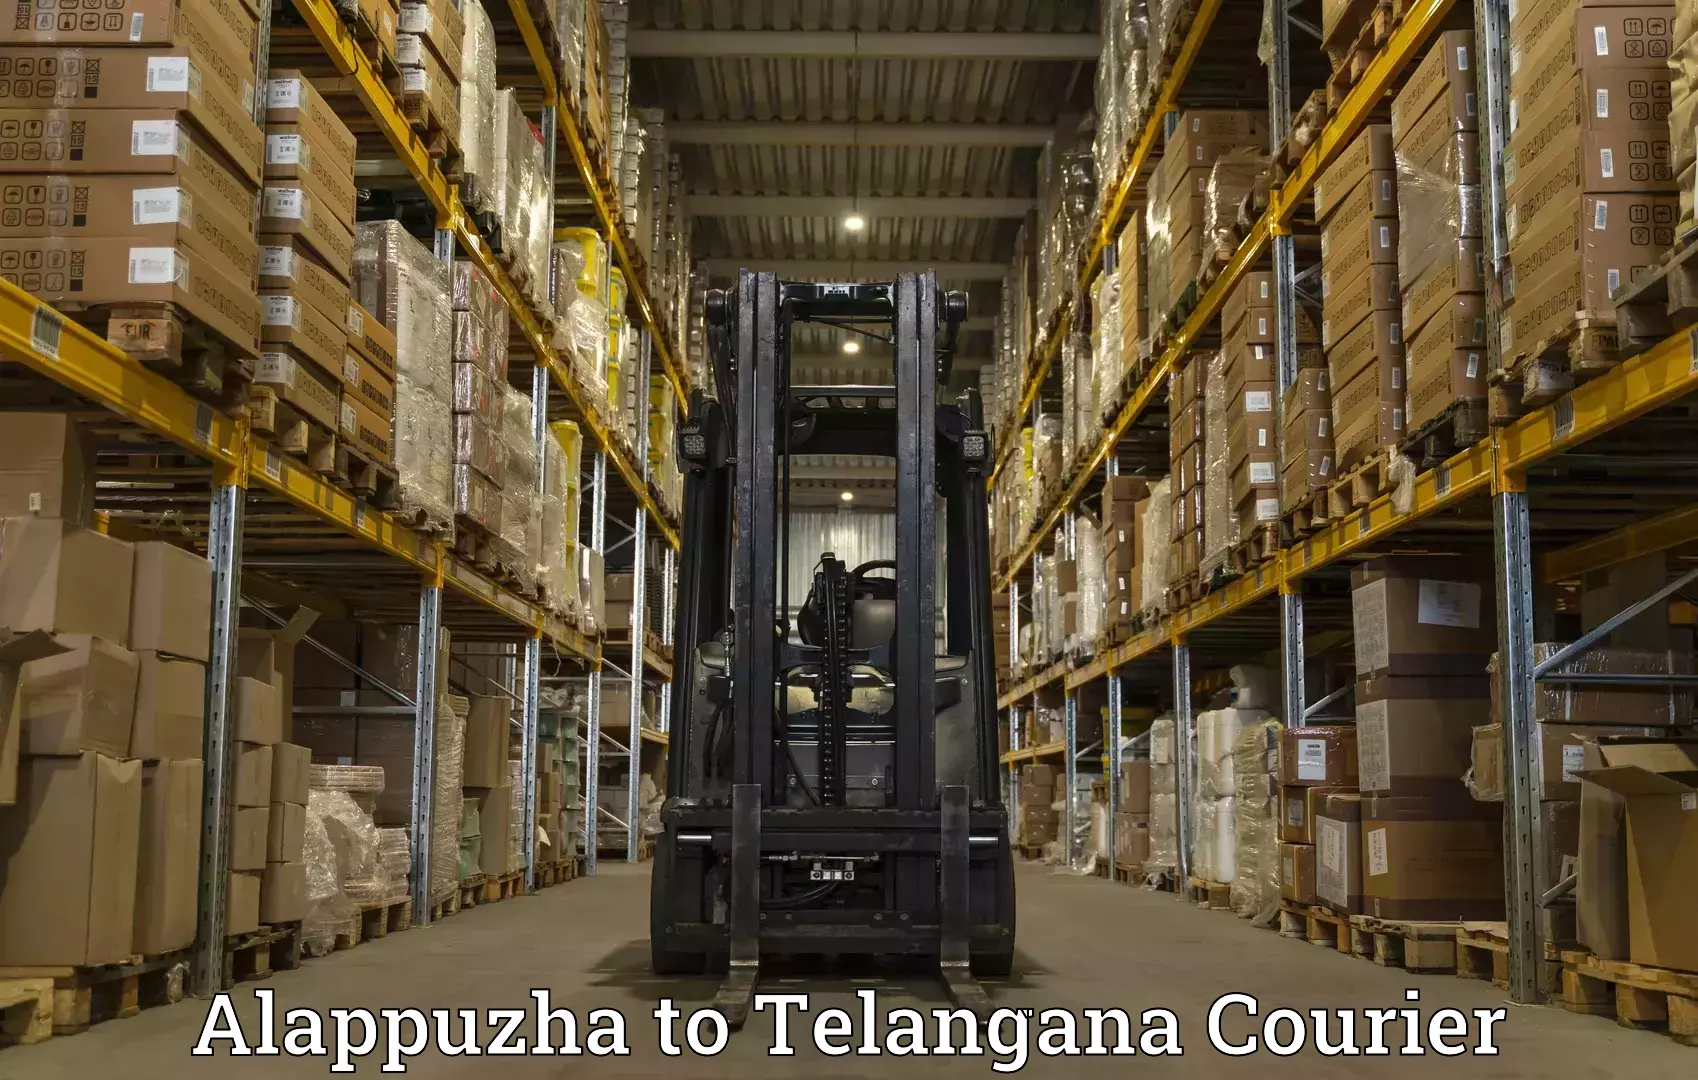 High-priority parcel service Alappuzha to Balanagar